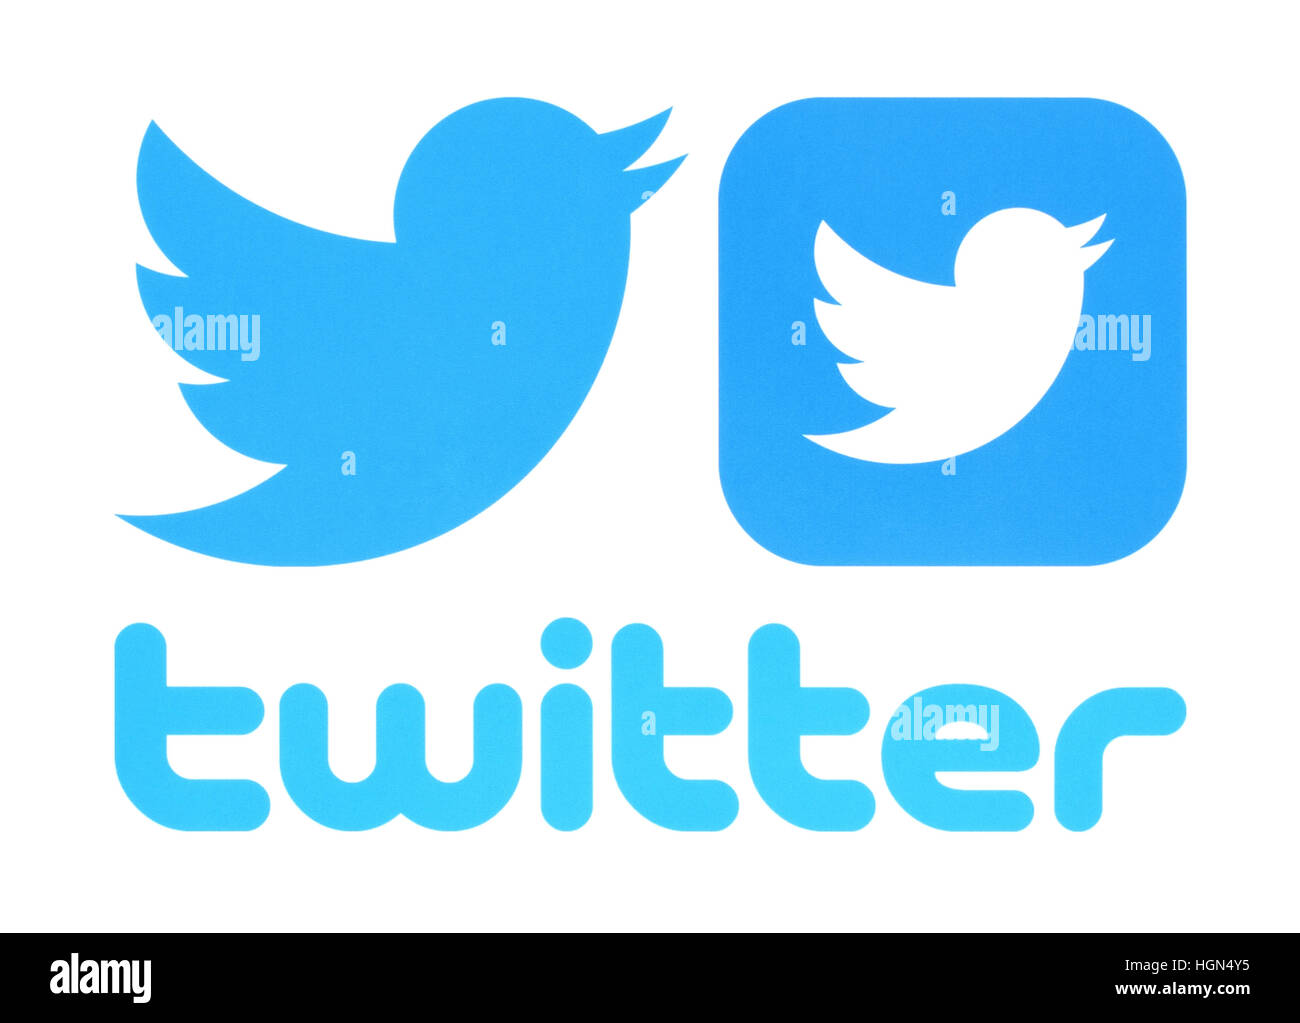 Kiev, Ukraine - 30 mai 2016 : Collection de Twitter logos imprimés sur du papier. Twitter est un service de réseau social en ligne qui permet aux utilisateurs d'envoyer Banque D'Images